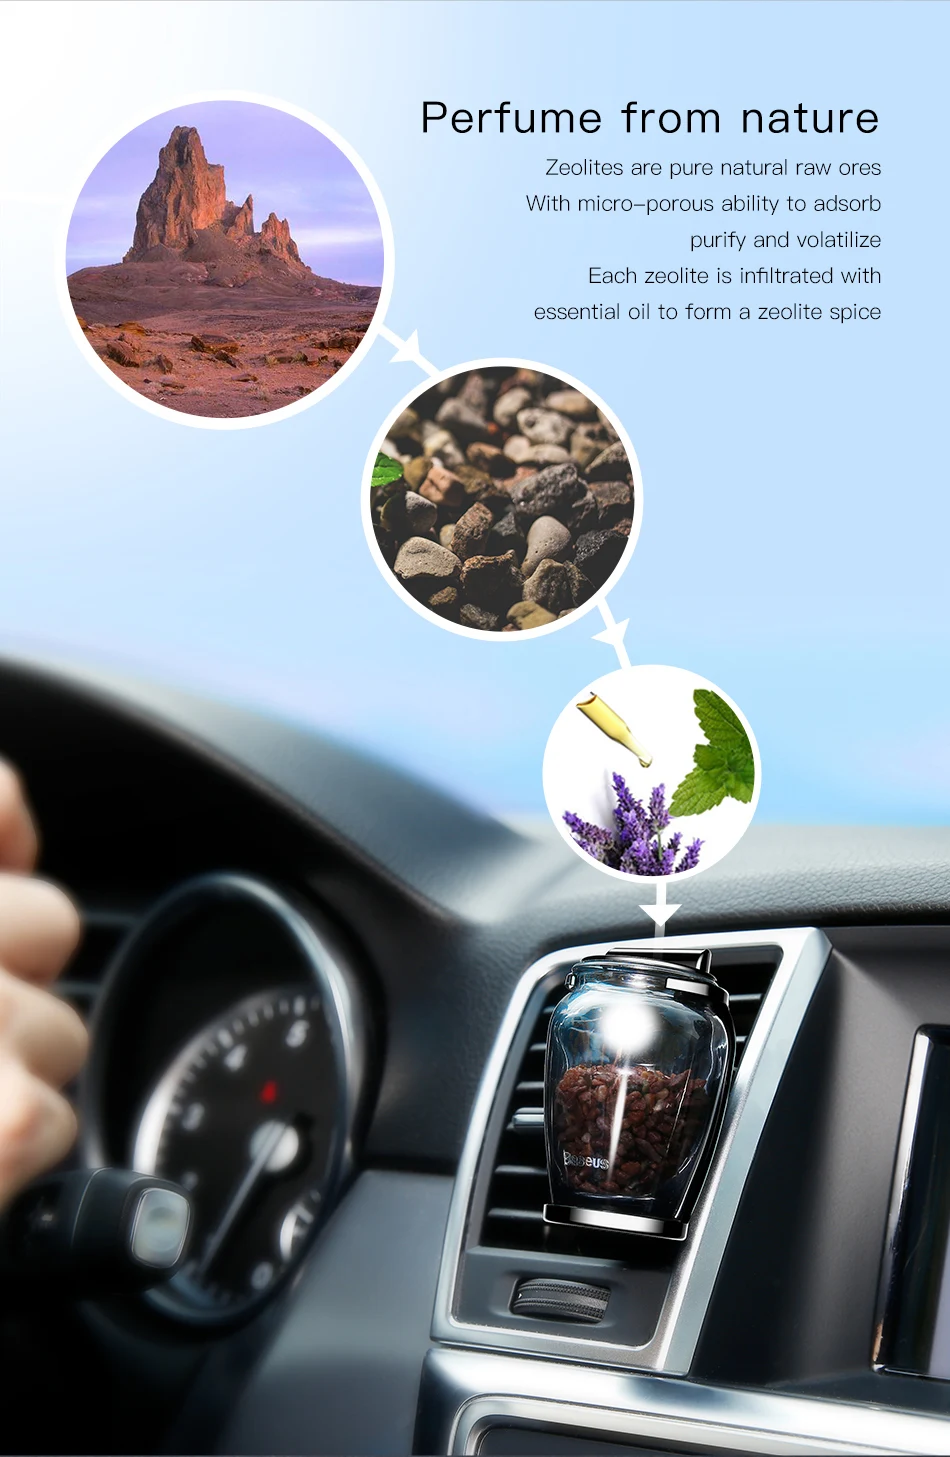 Baseus освежитель воздуха для автомобиля, автомобильный освежитель воздуха на выходе, освежитель воздуха, ароматерапия в автомобиле, цеолит, освежитель воздуха, твердый парфюм